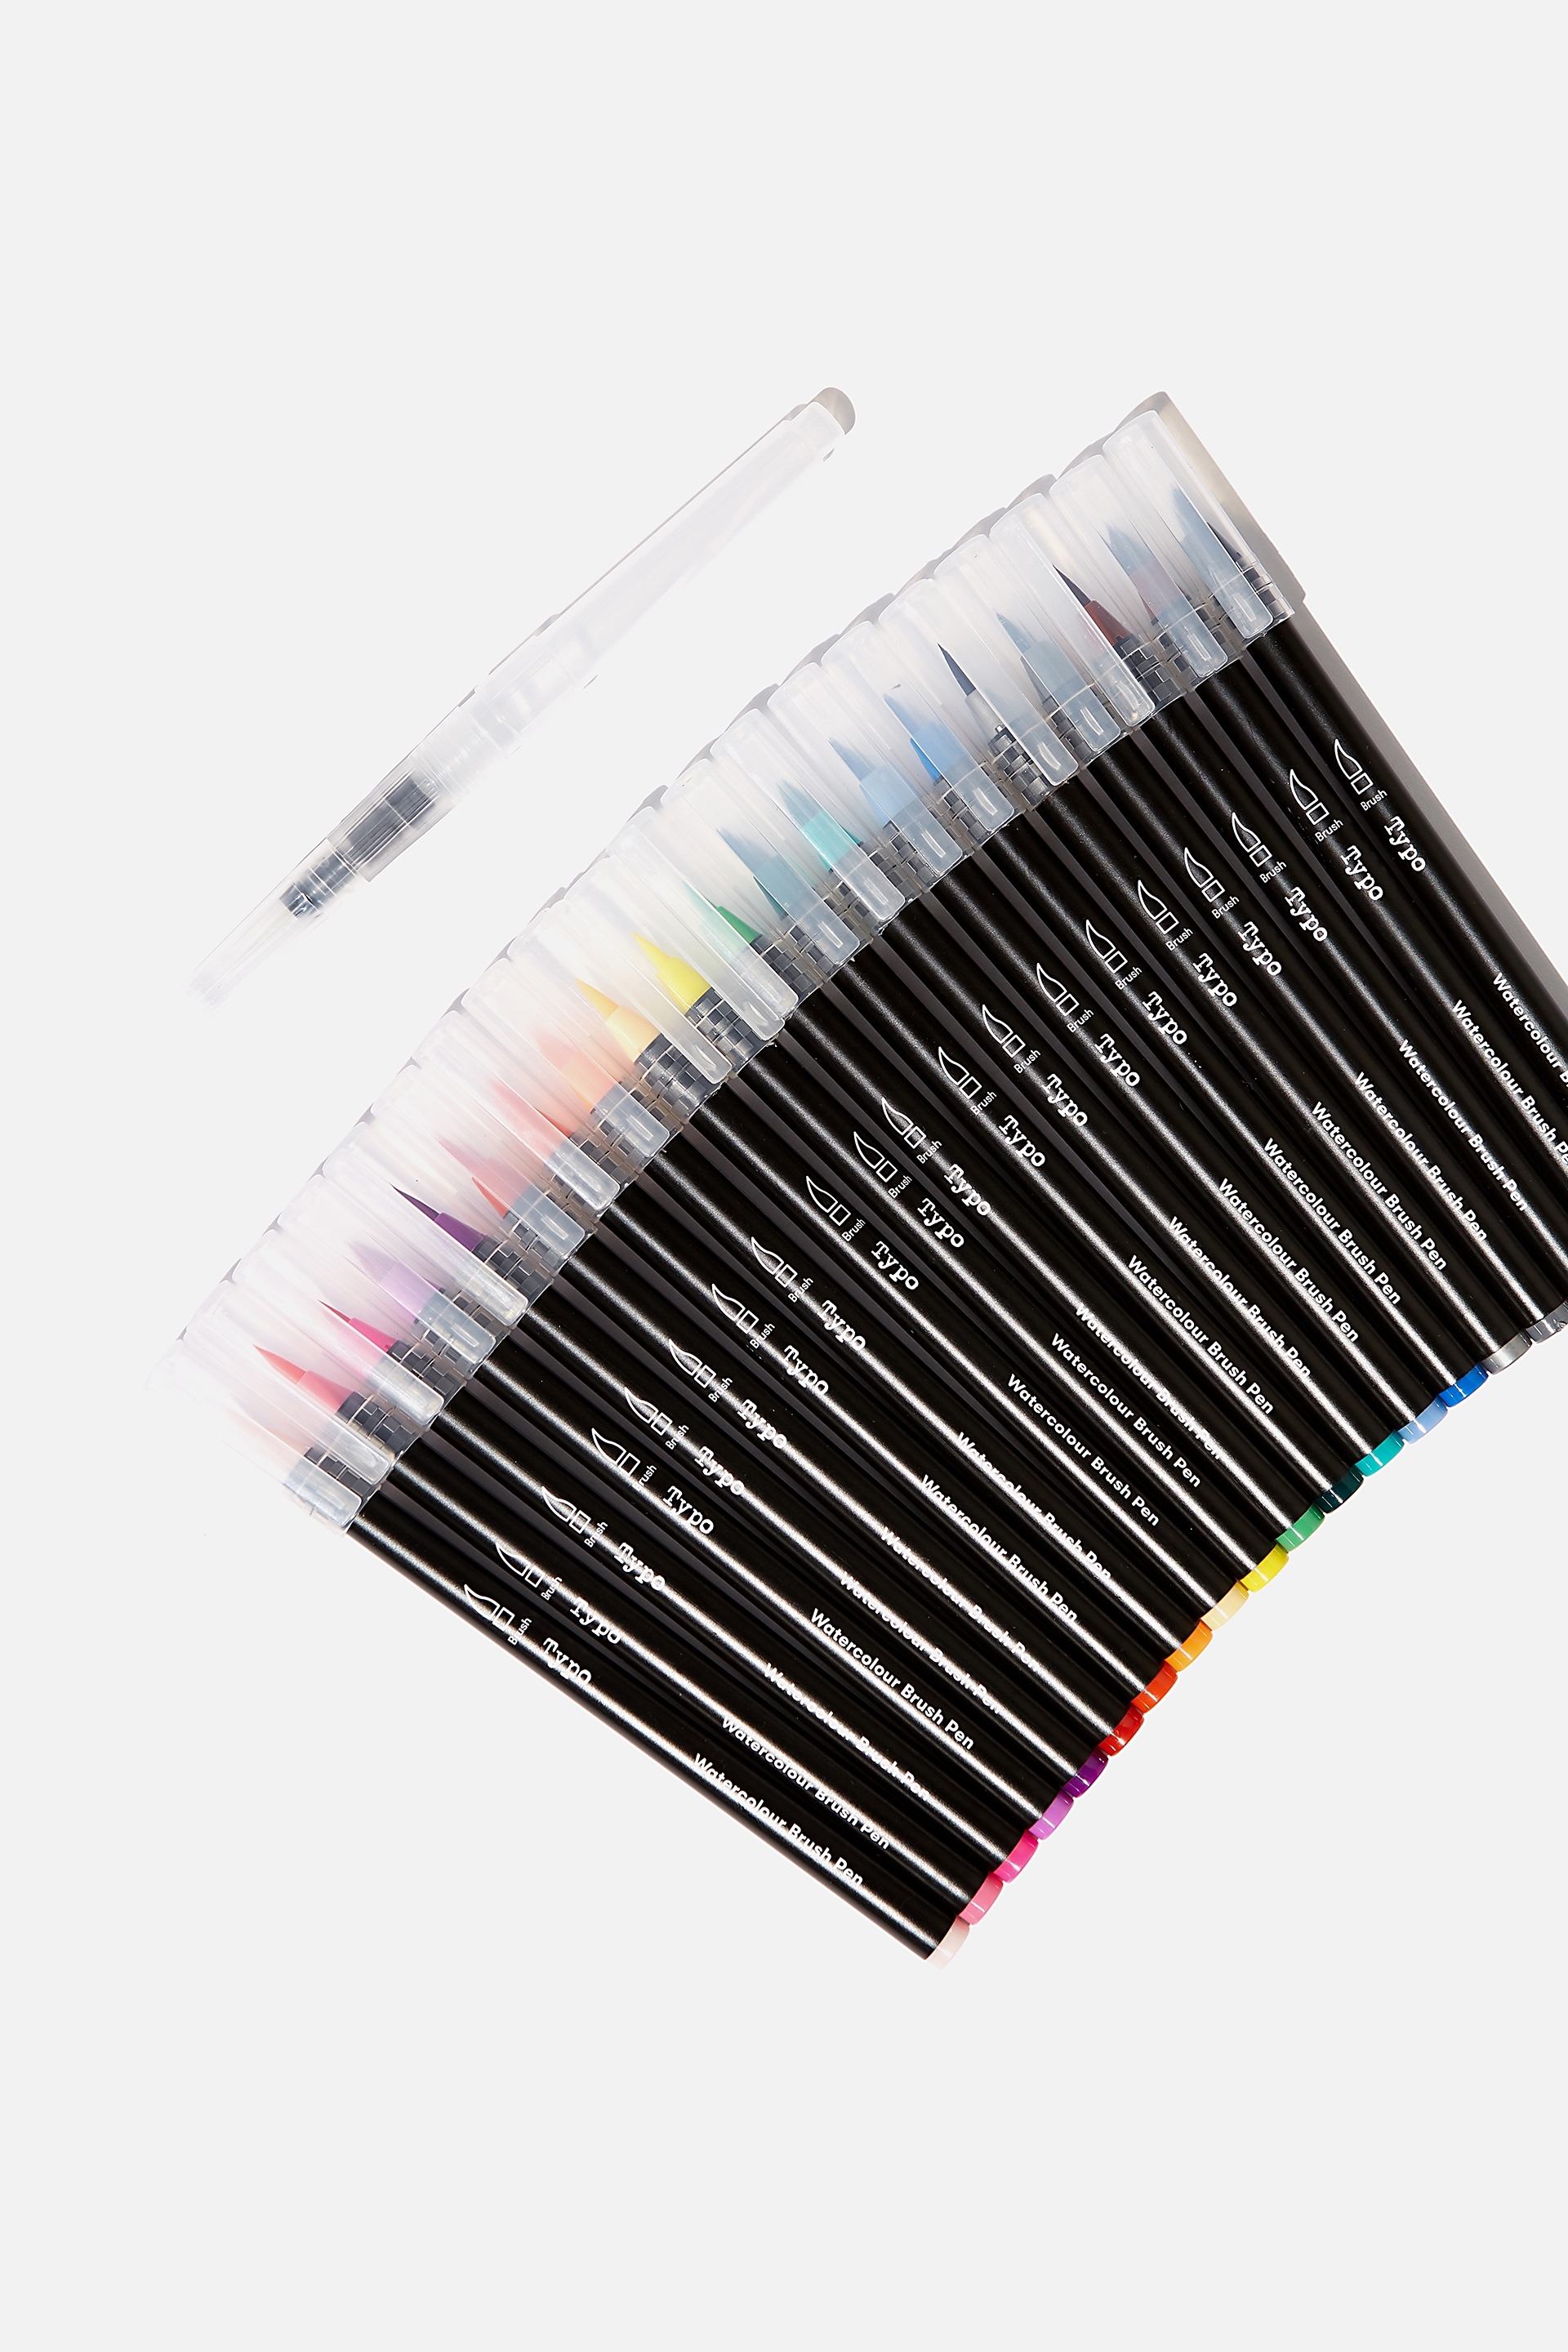 30 Acrylic Paint pens + 36 Watercolors + 28 Watercolor Brush Pens